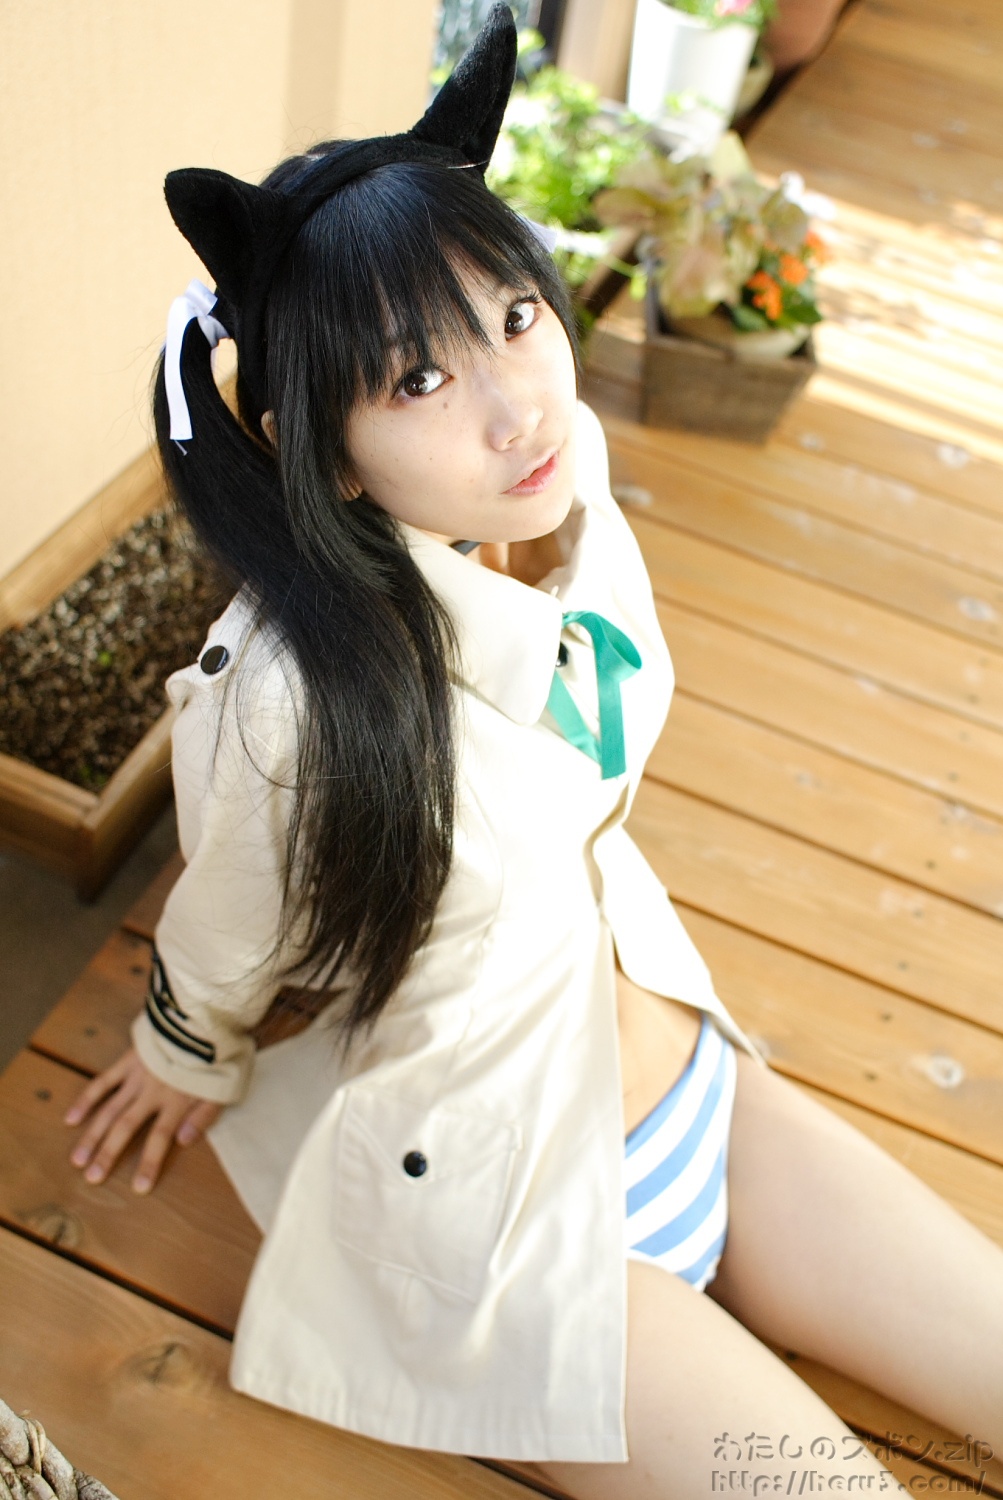 cosplay美女套图 日本游戏美女扮相写真 高清图片